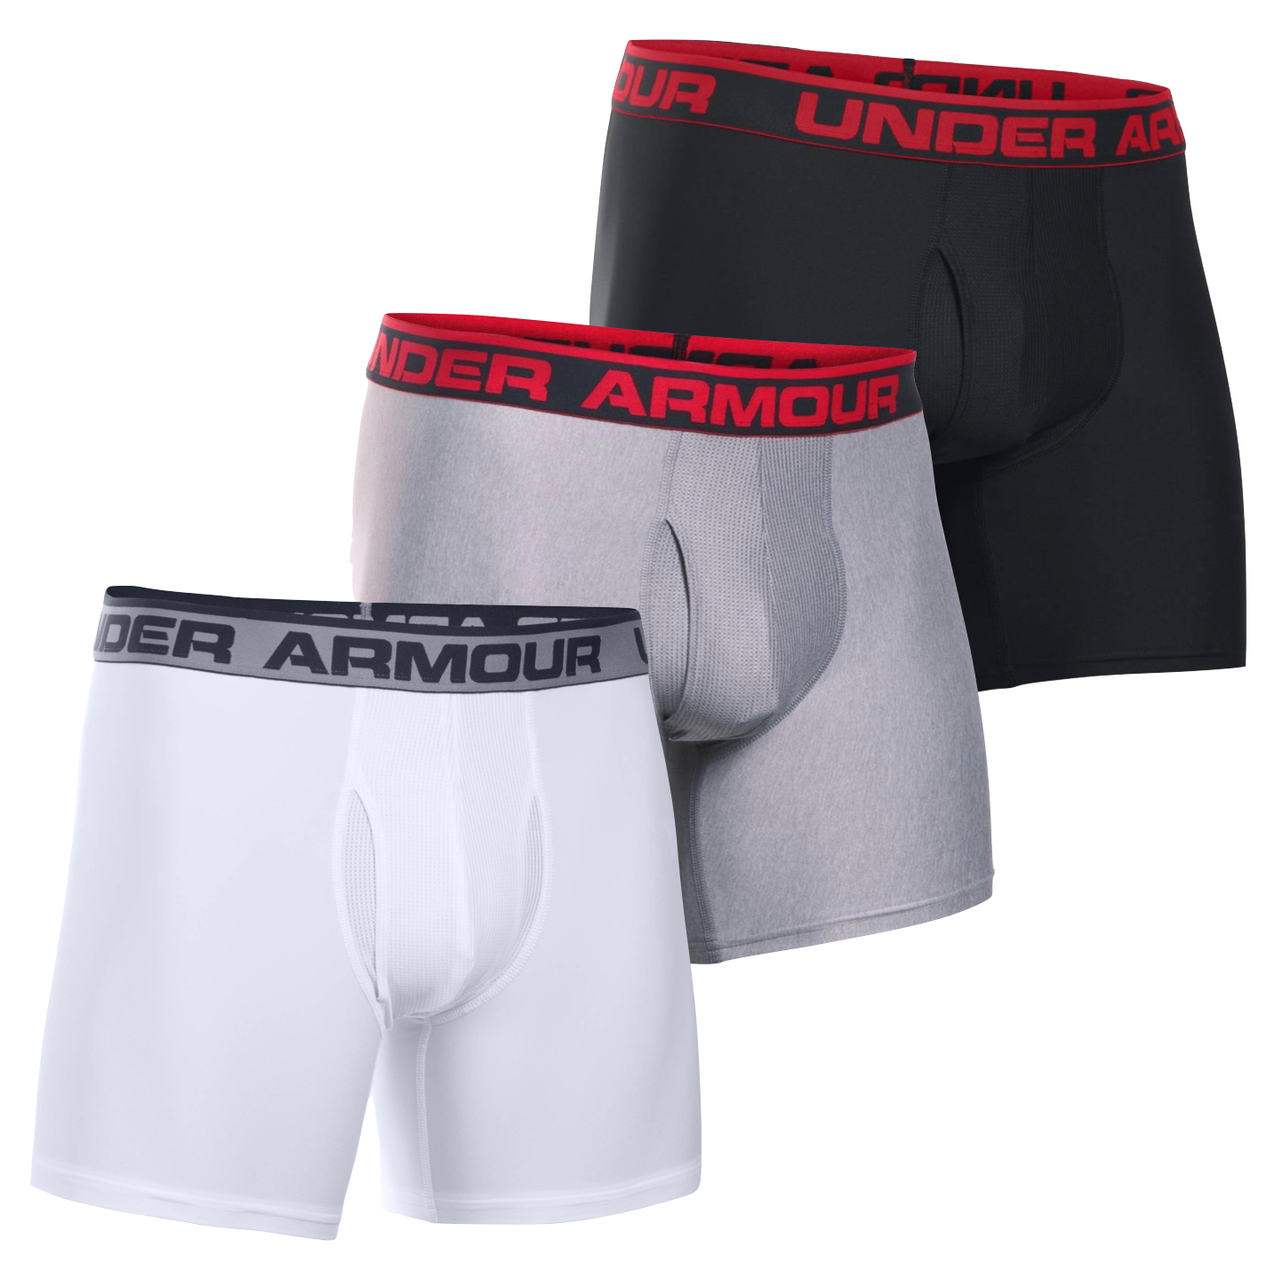 Under Armour Mens Large Boxer Briefs 6 Boxerjock Underwear Black Blue 2  Pack UA